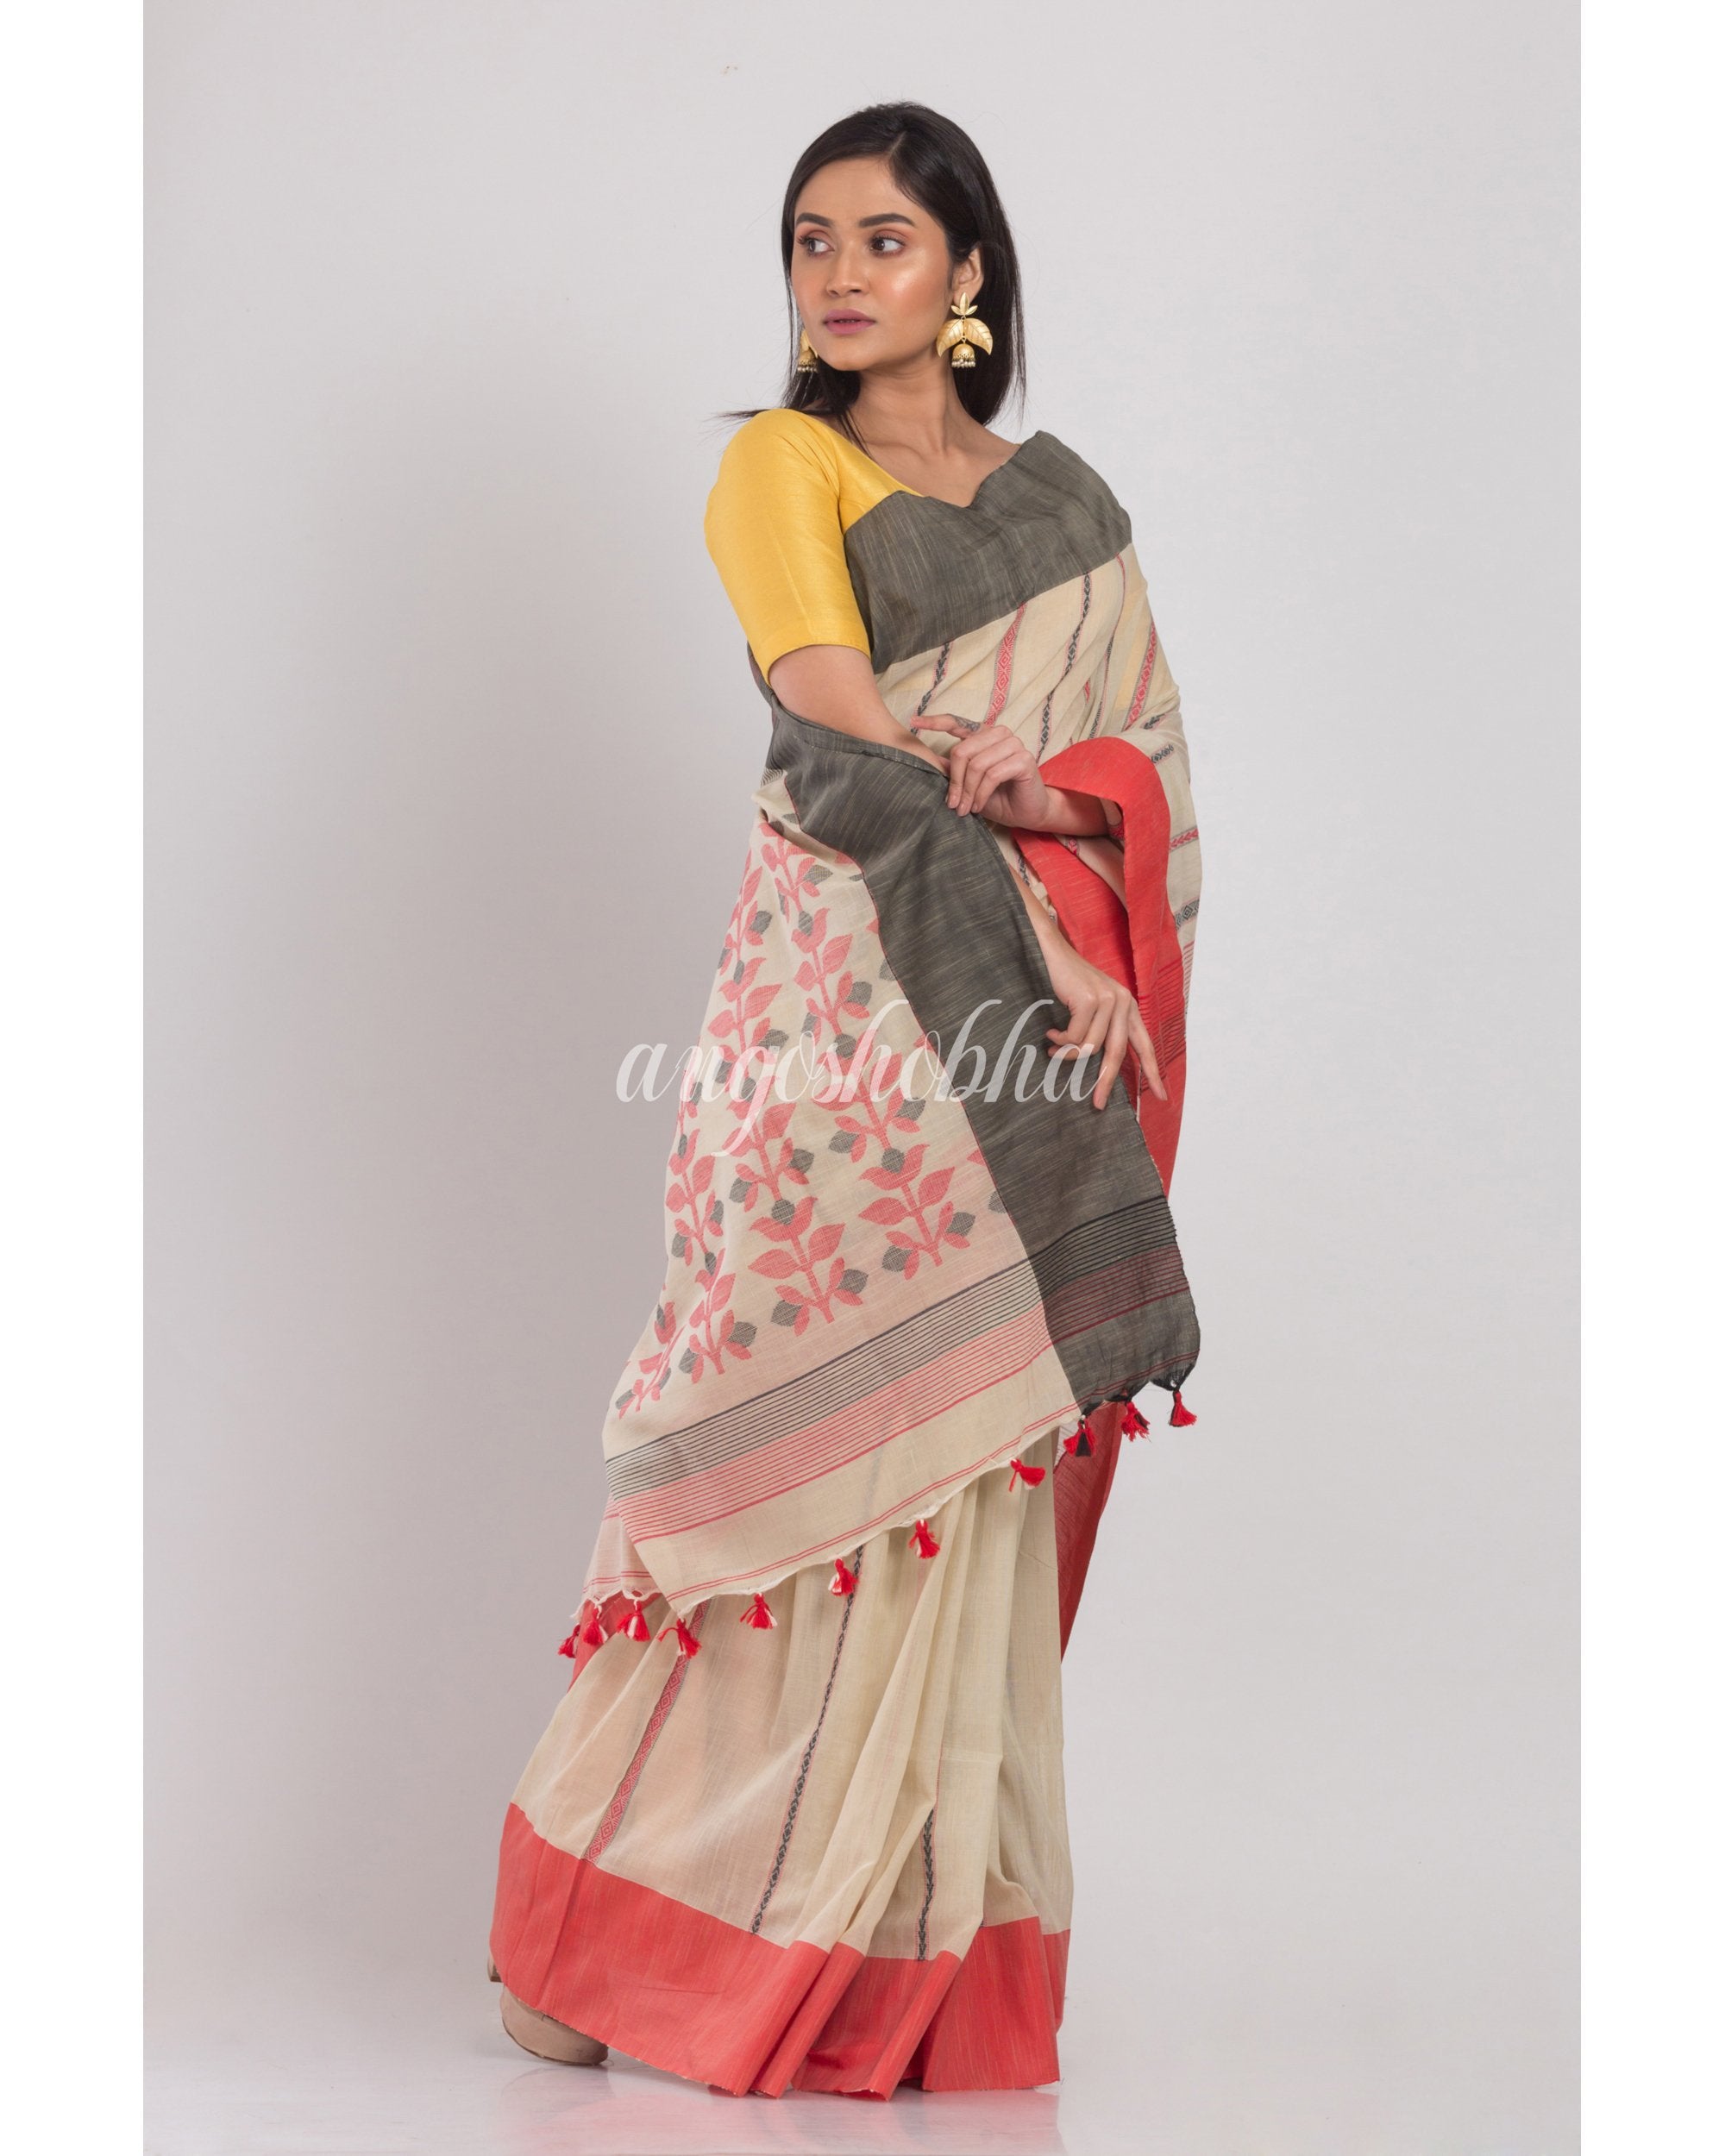 Women's Ash Grey Handloom Cotton Saree - Angoshobha